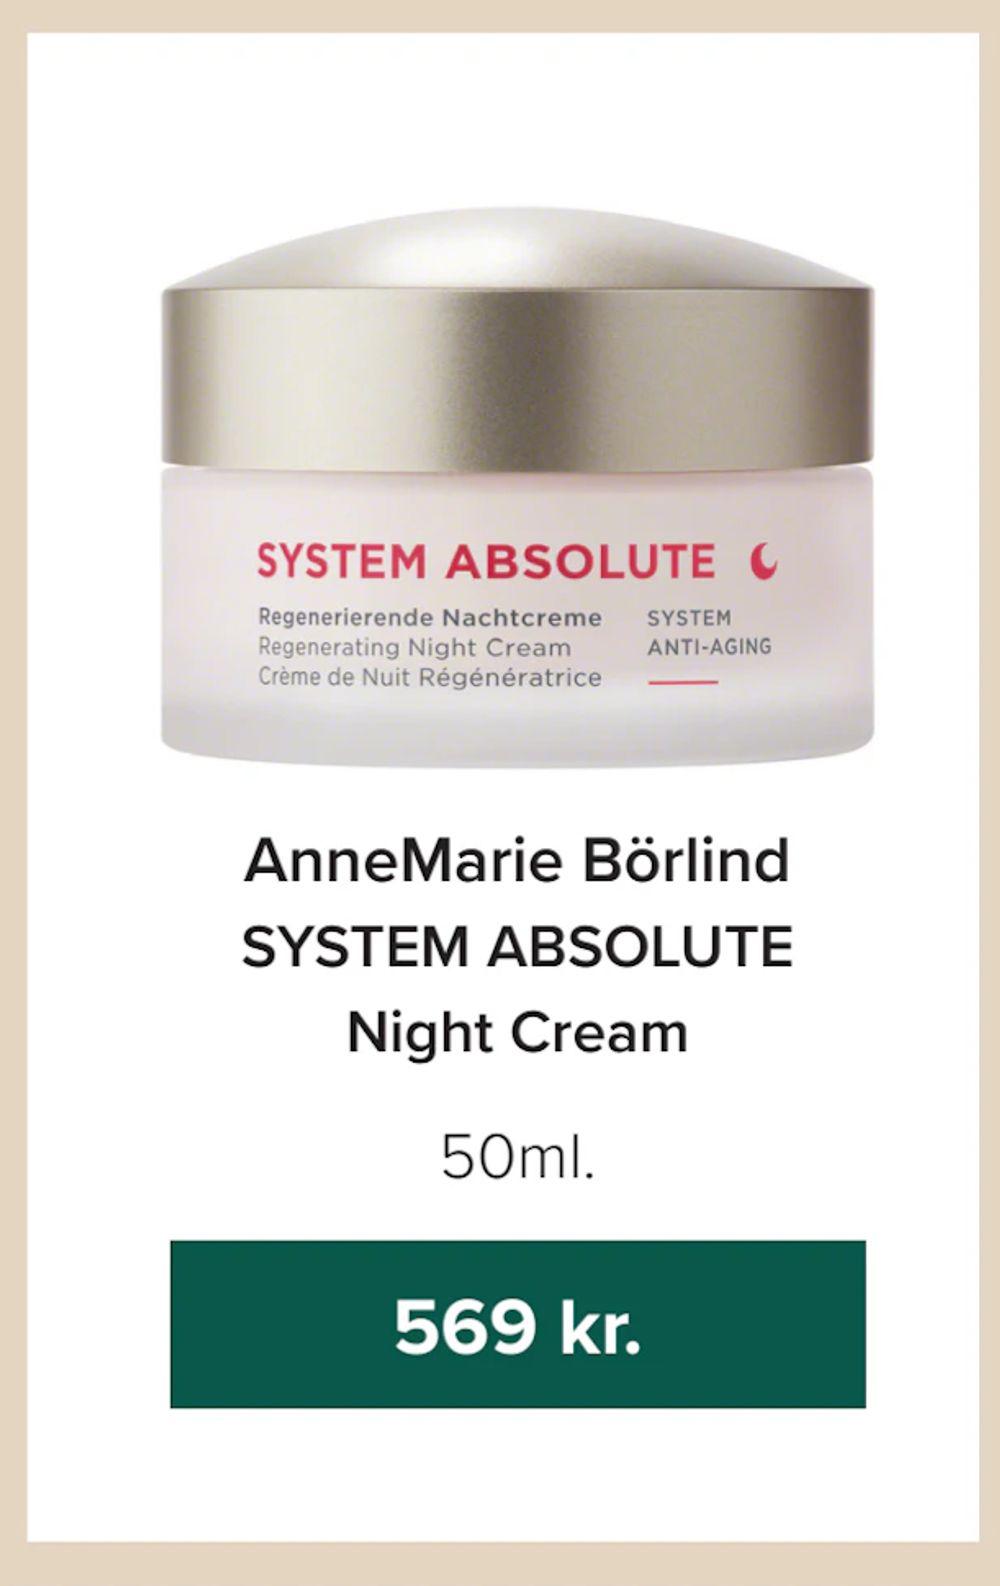 Tilbud på AnneMarie Börlind SYSTEM ABSOLUTE Night Cream fra Helsemin til 569 kr.